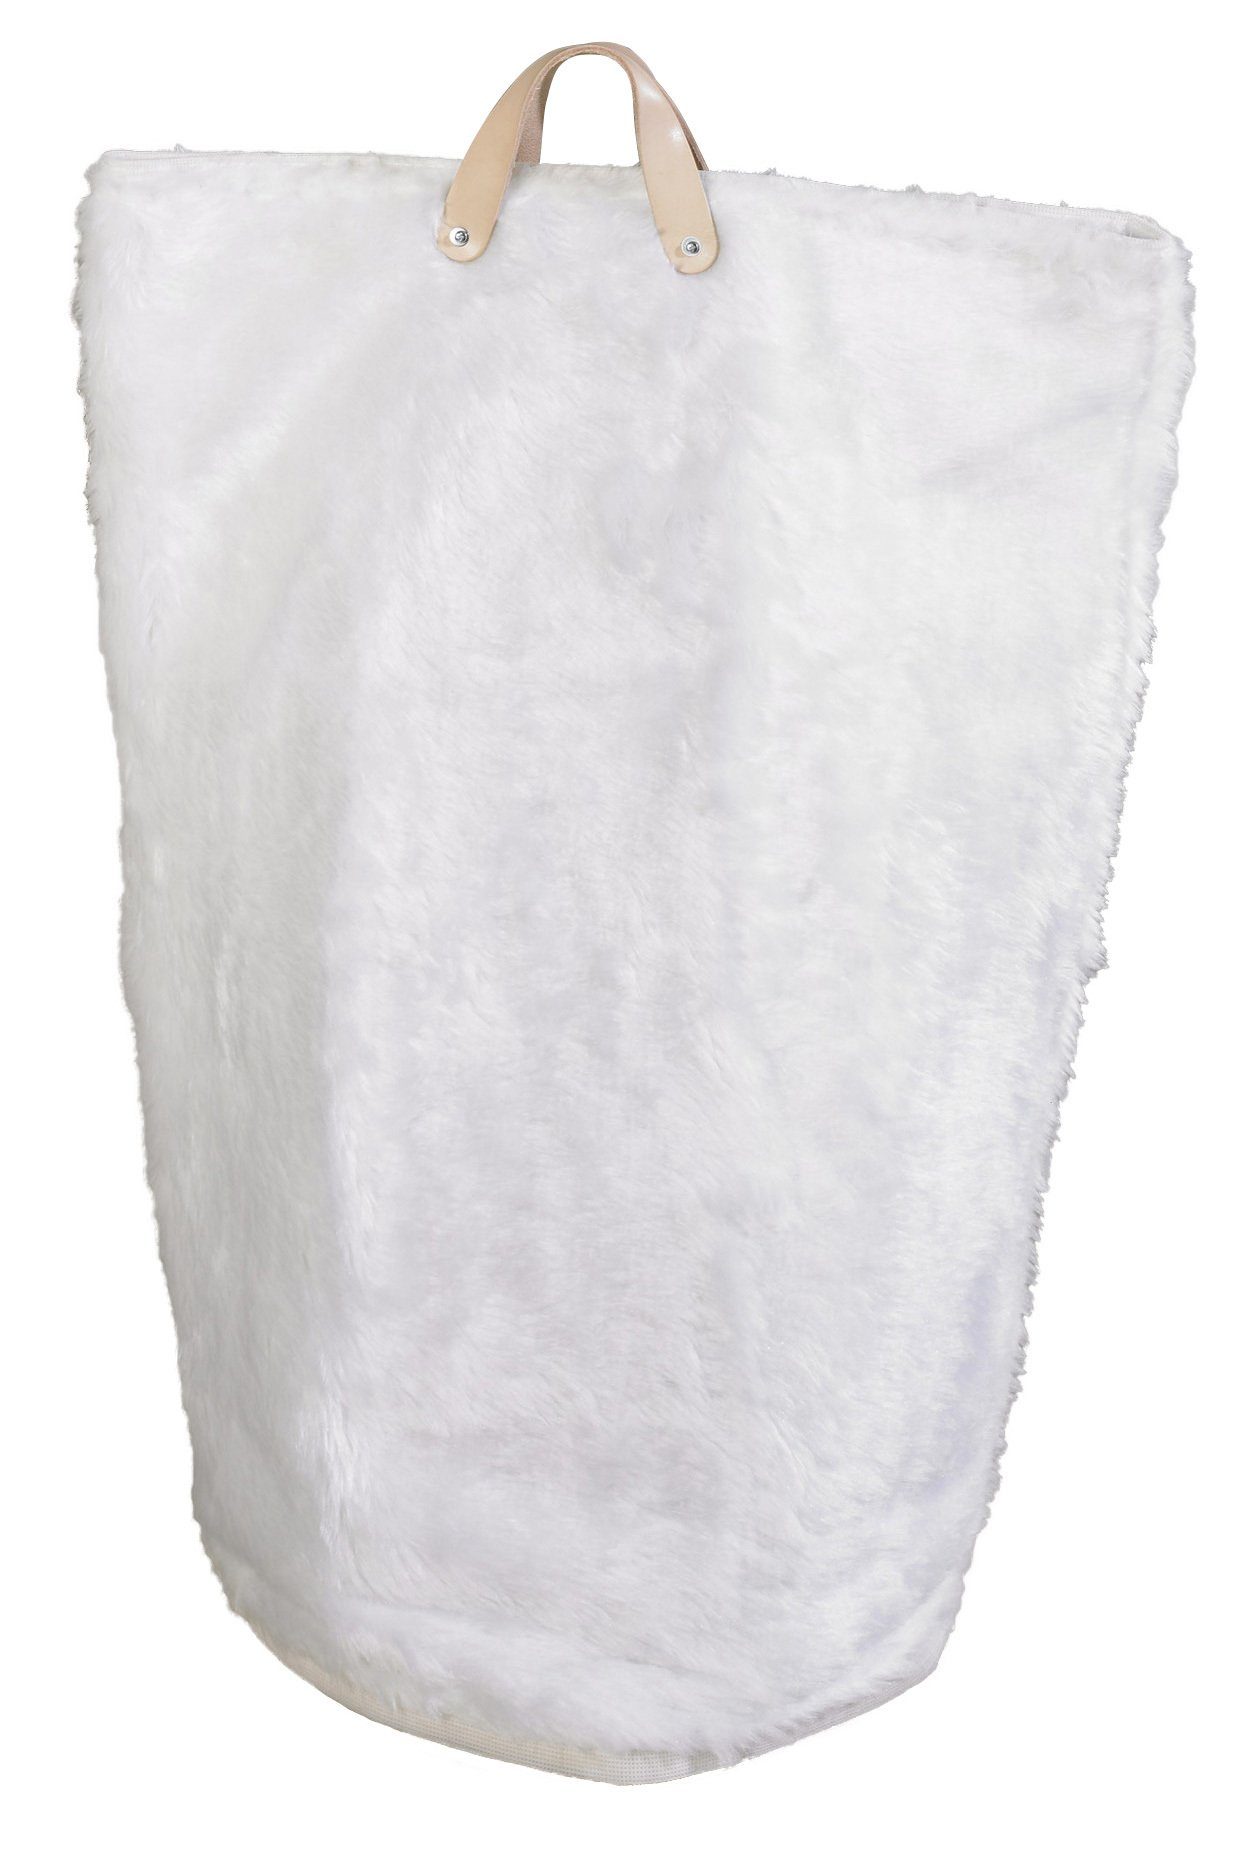 ARTRA Wäschetasche (1 St), Wäschesammler Bad Wäschetaschen Weiß "Maja" in Fellimitat Wäschebeutel, Wäschesack, Wäschekorb und Multifunktionstasche